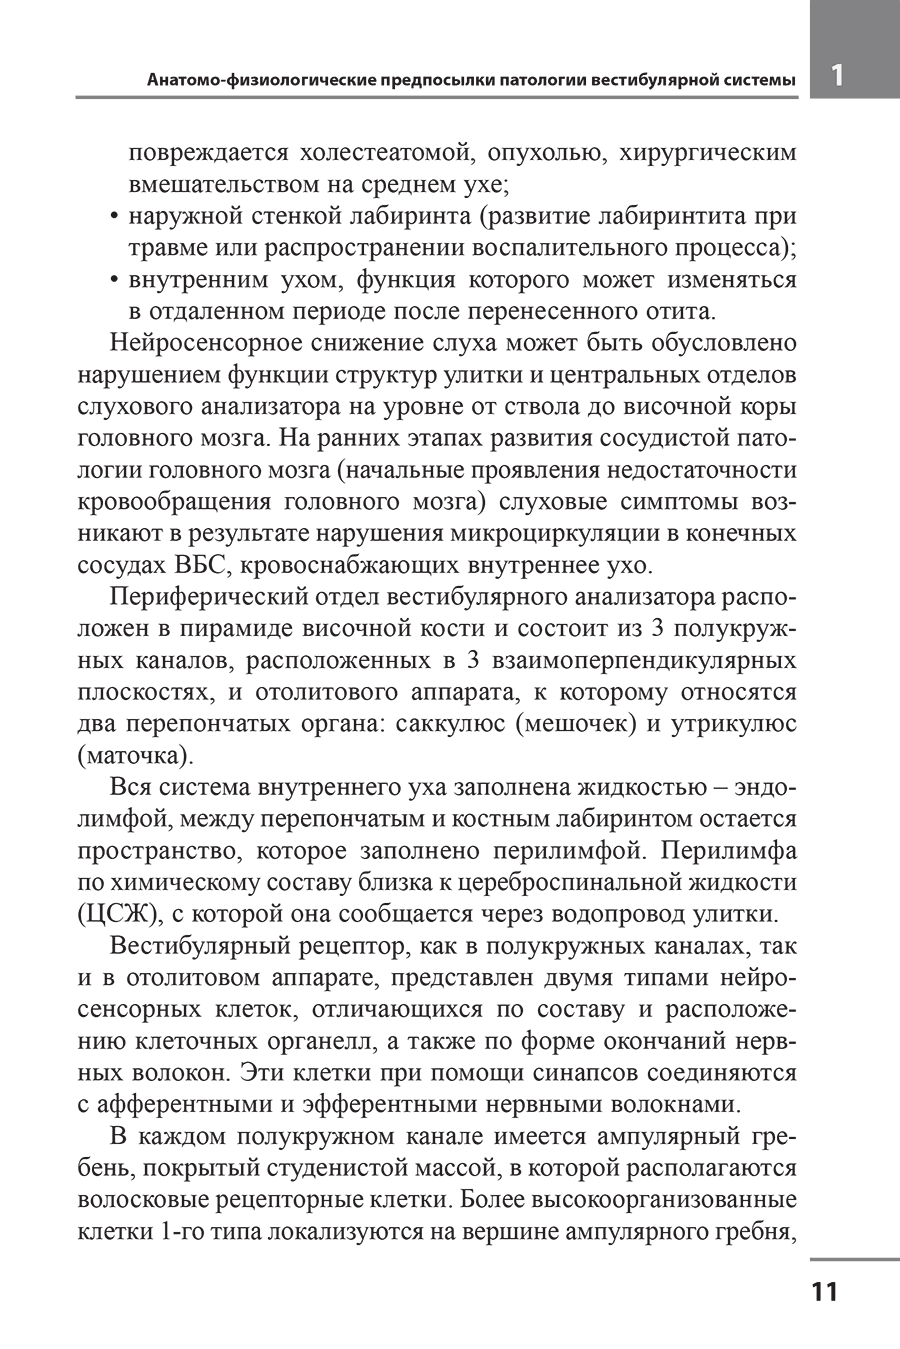 Пример страницы из книги "Головокружение. Отоневрологические аспекты" - Алексеева Н. С.